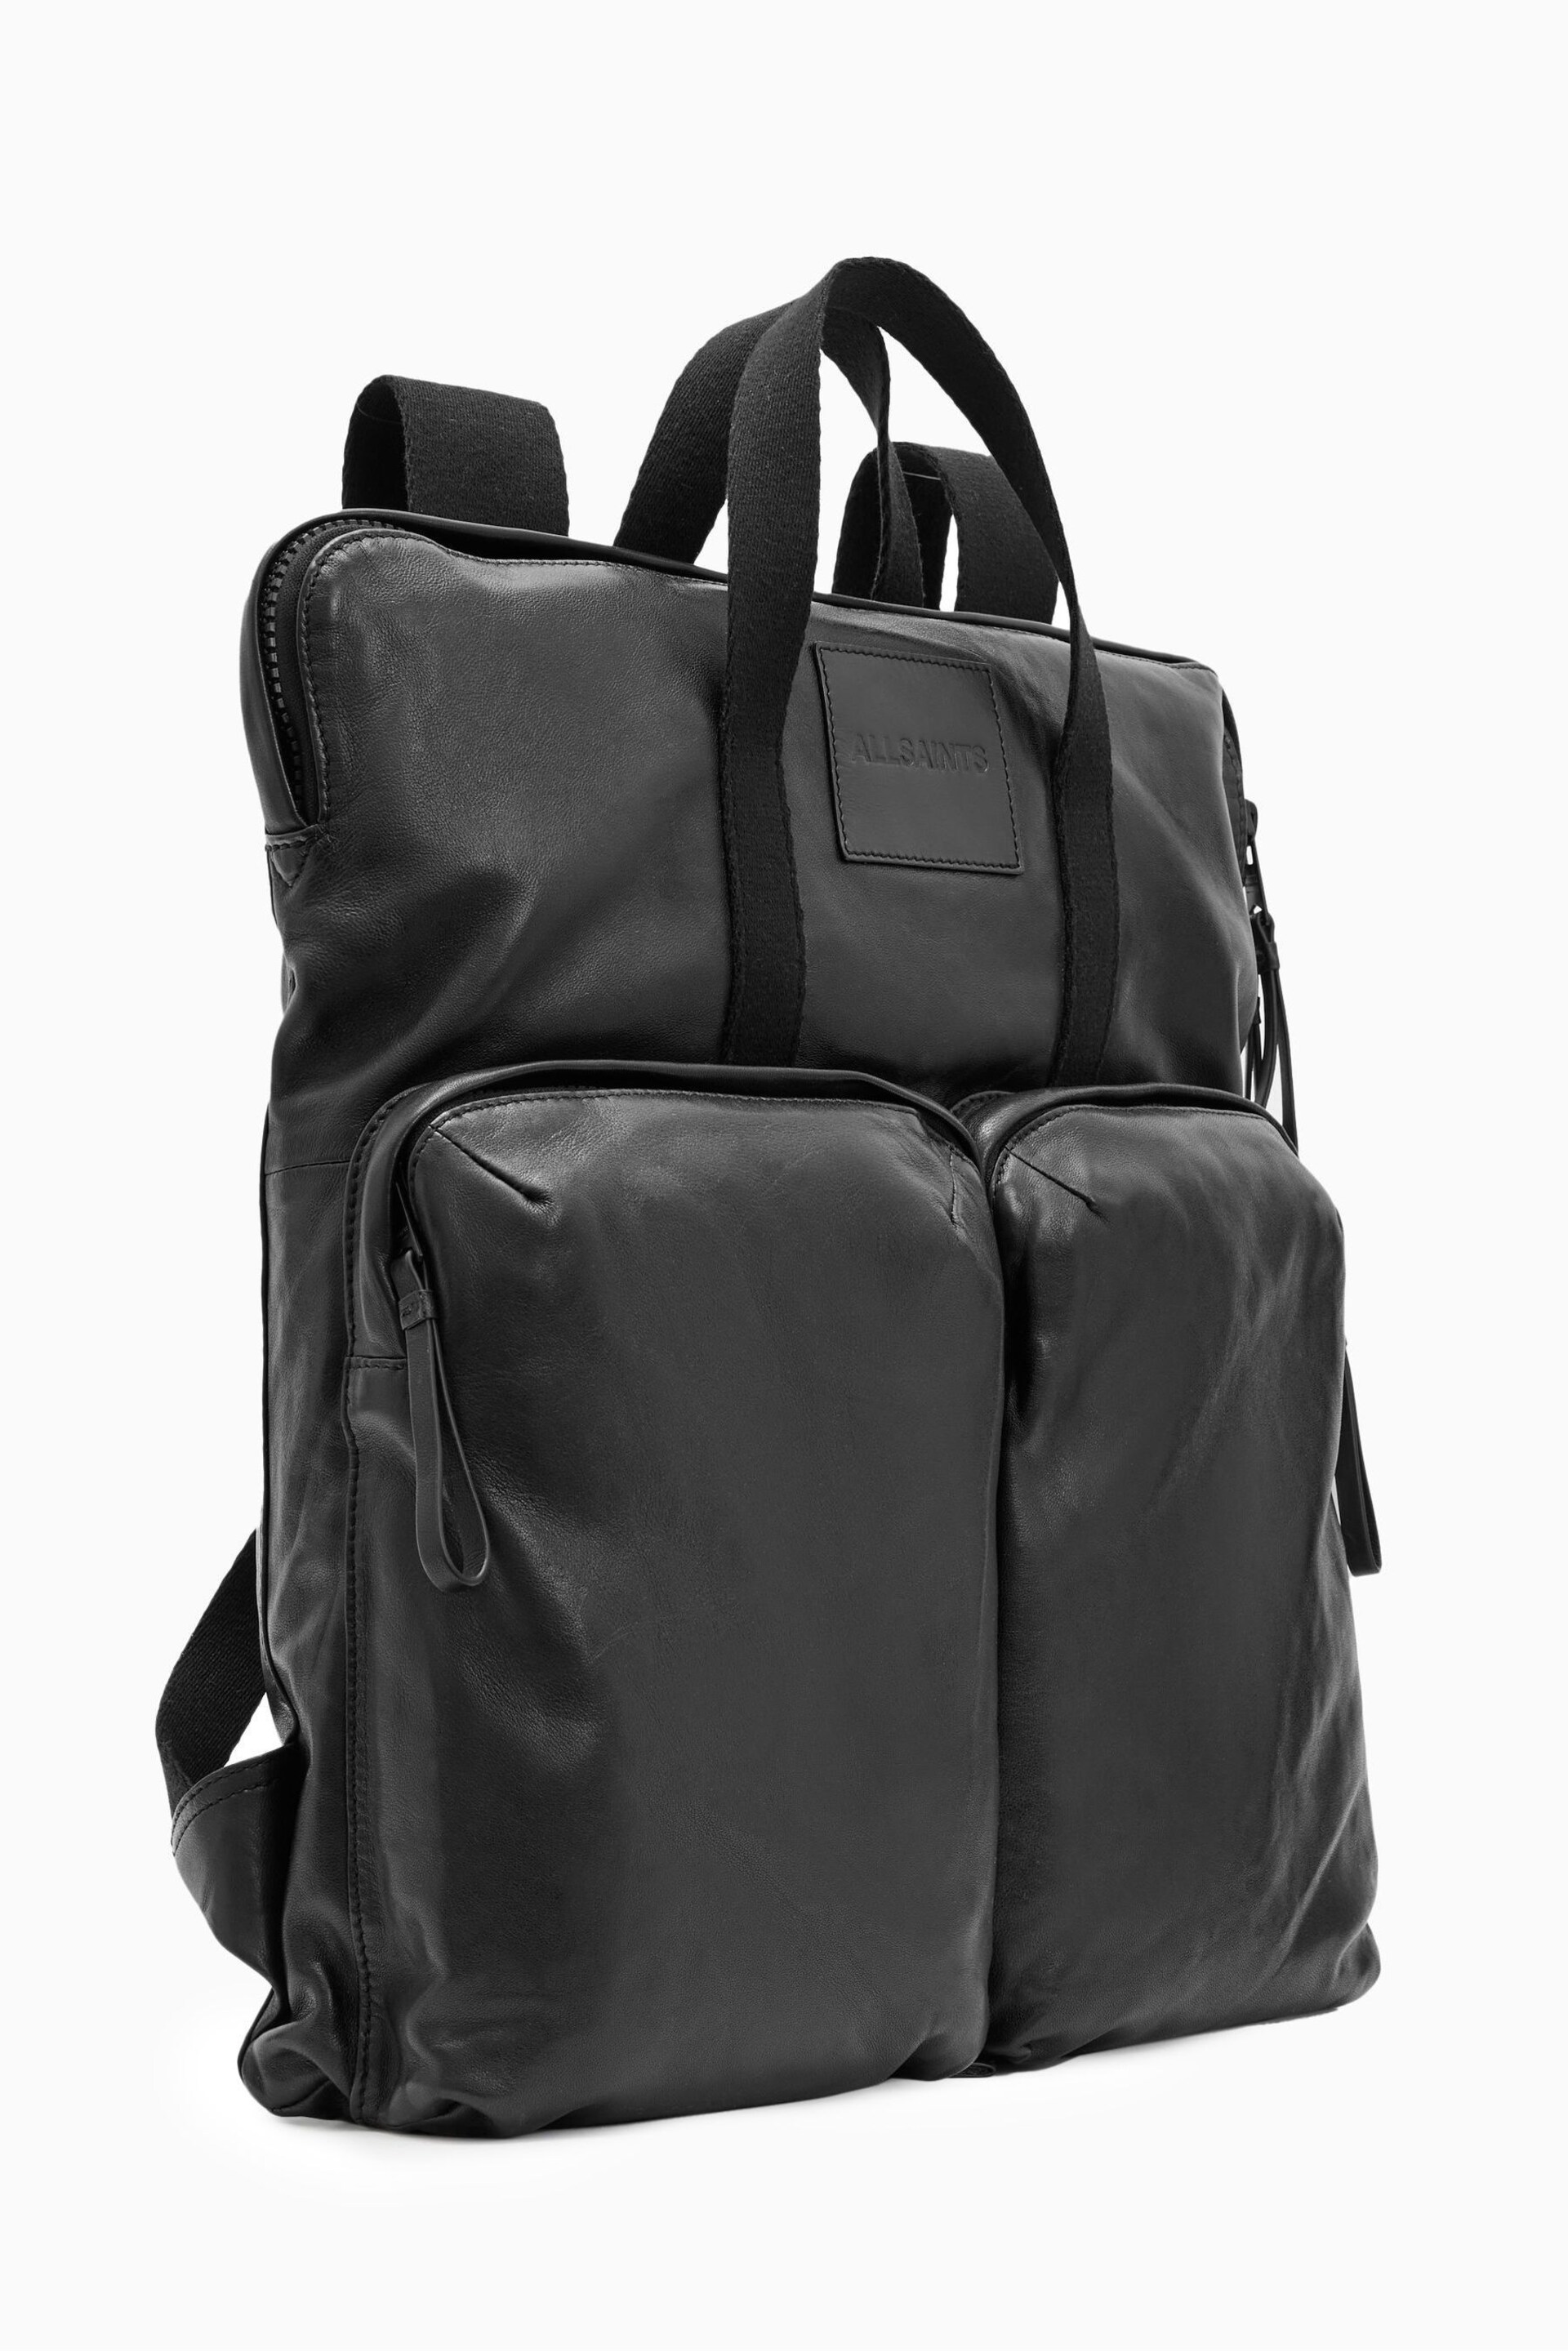 AllSaints Black Force Backpack - Image 4 of 7